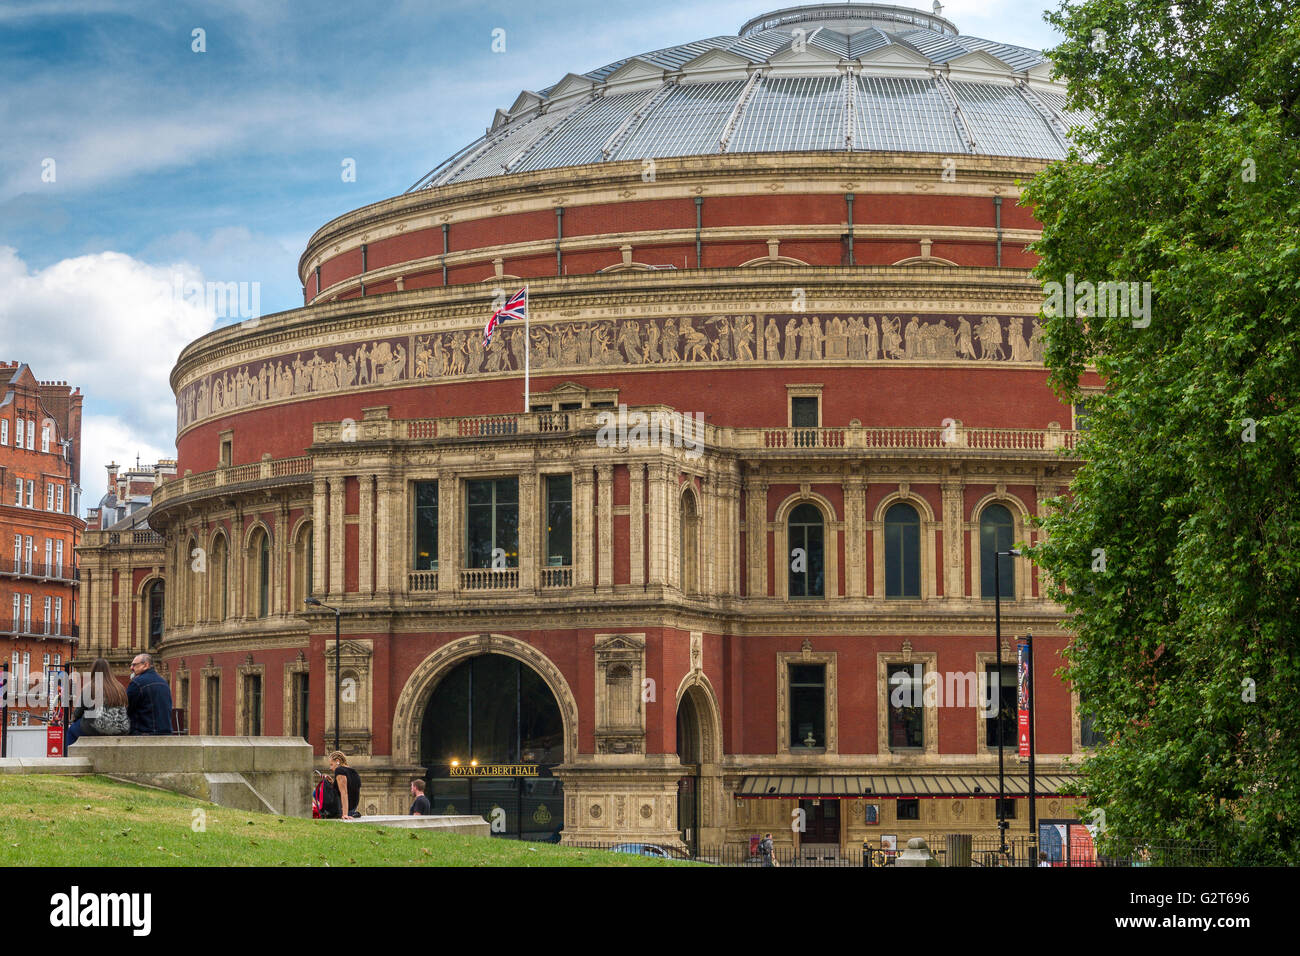 El Royal Albert Hall en South Kensington, una sala de conciertos de la época victoriana de renombre mundial y sede de los conciertos anuales de Proms, Londres, Reino Unido Foto de stock